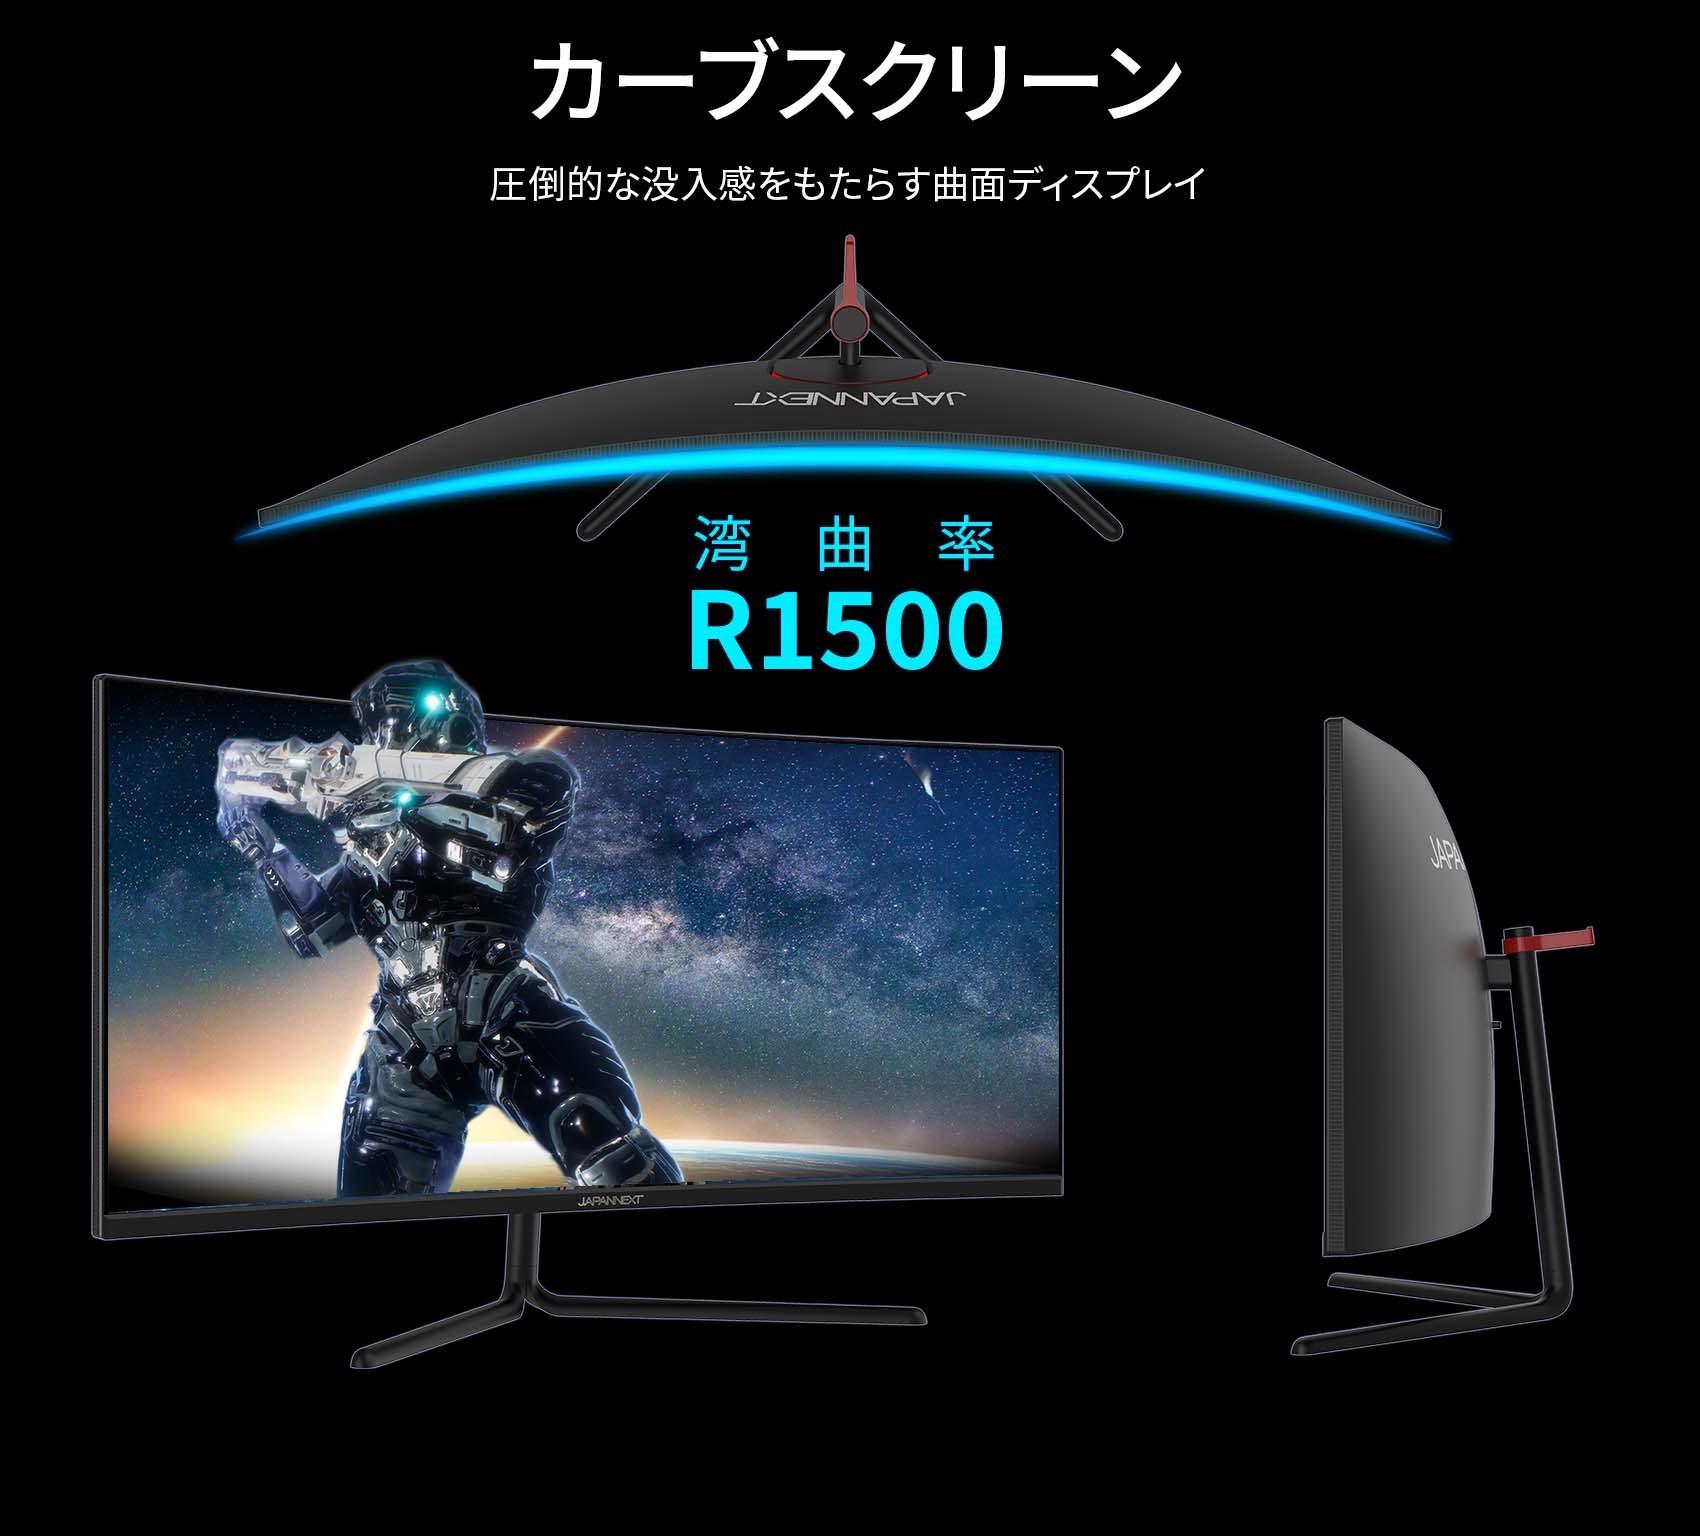 独立を宣言 商品名：JAPANNEXT 湾曲ゲーミングモニター34型 テレビ